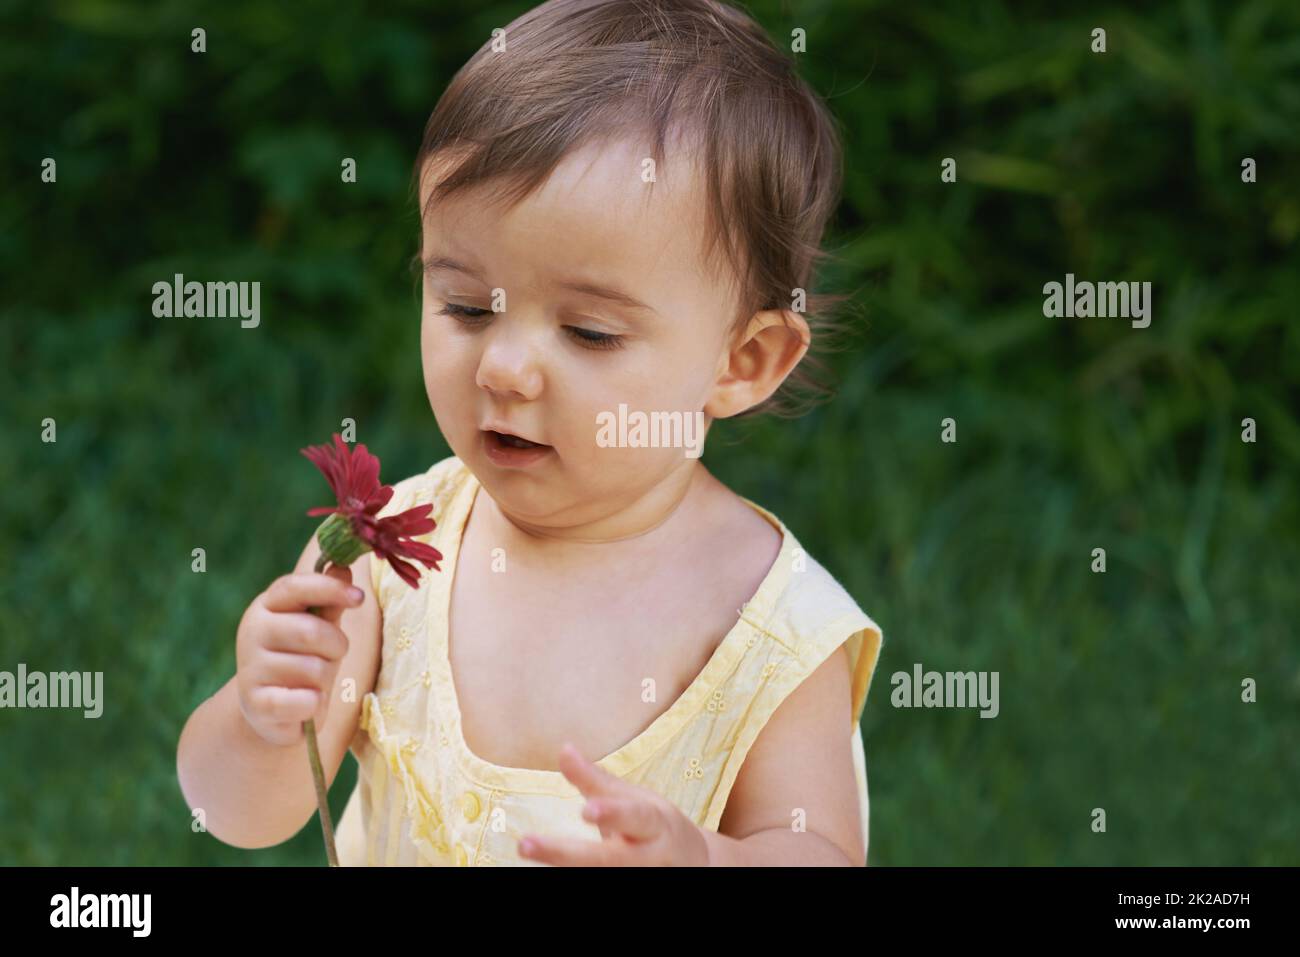 Curieux de la nature. Une petite fille douce regardant une fleur. Banque D'Images